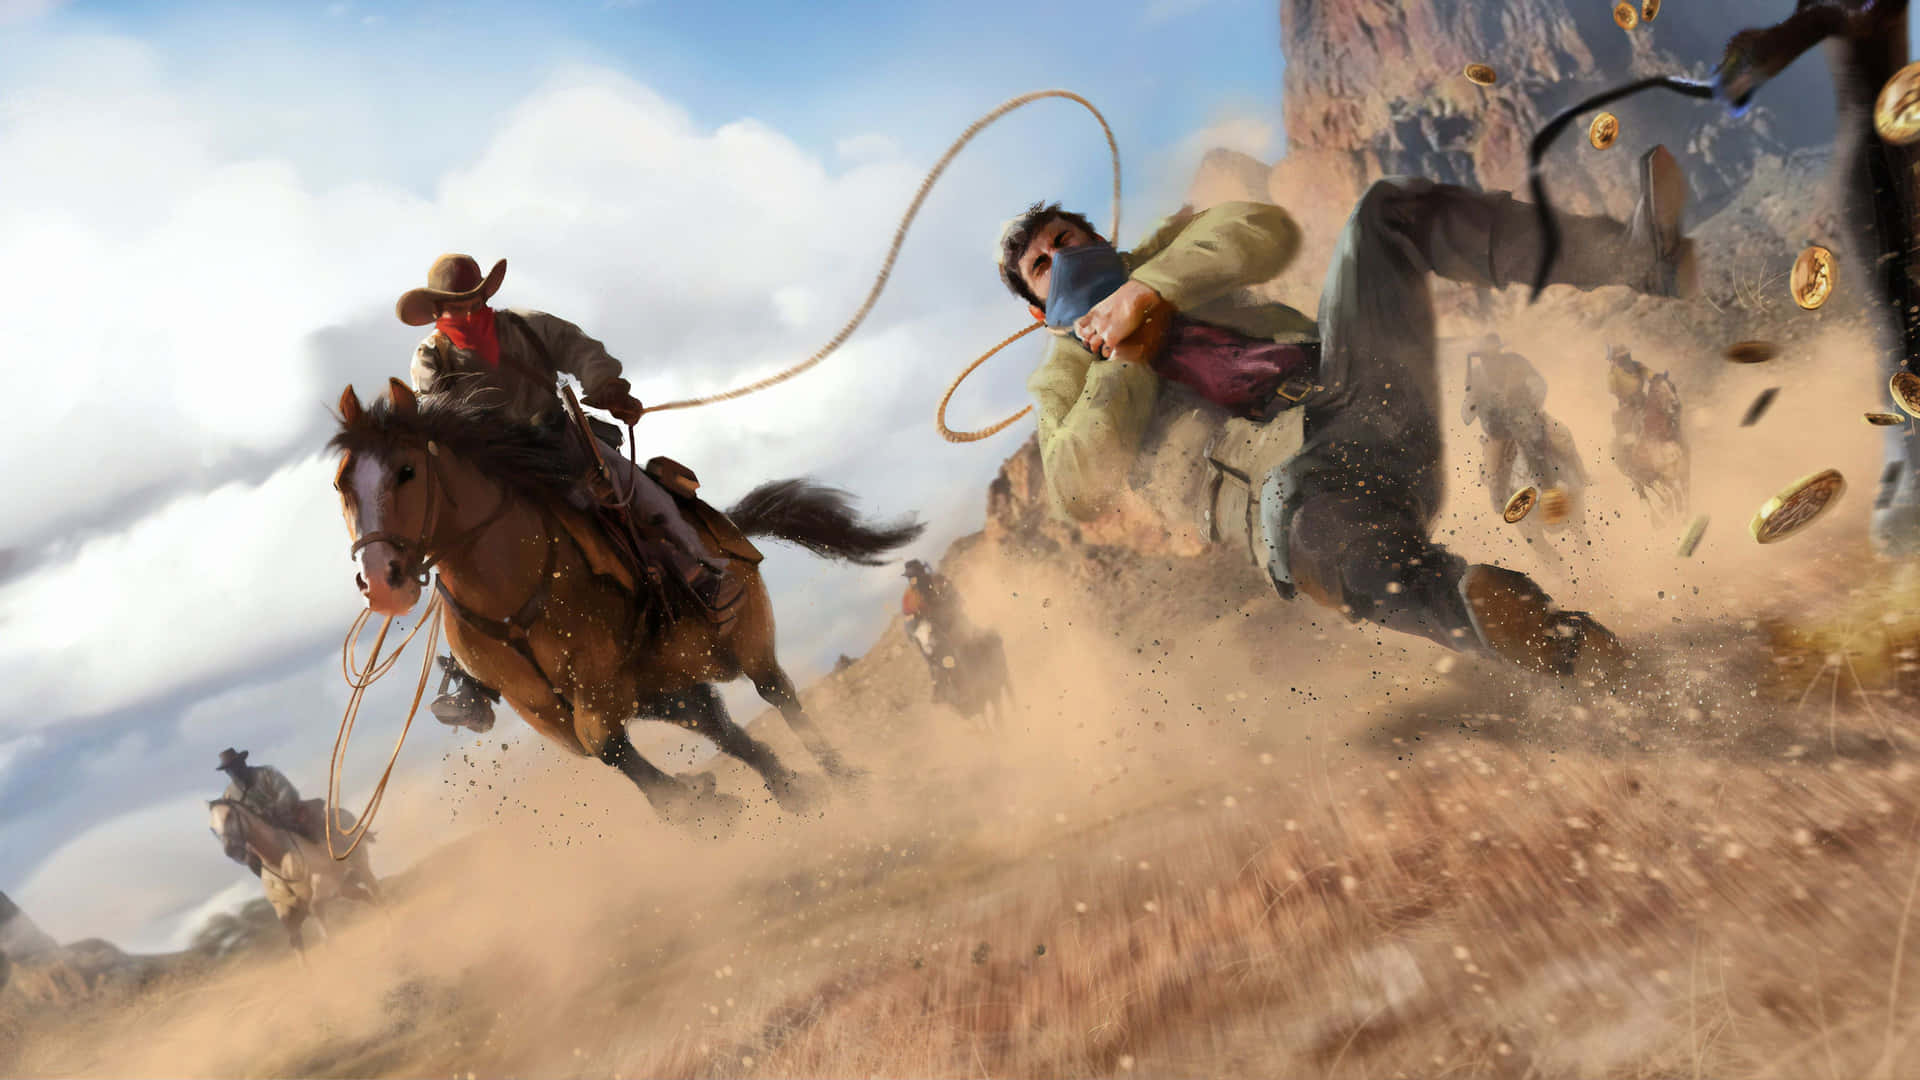 Migliorsfondo Di Red Dead Redemption 2: Un Cowboy Che Cattura Un Uomo